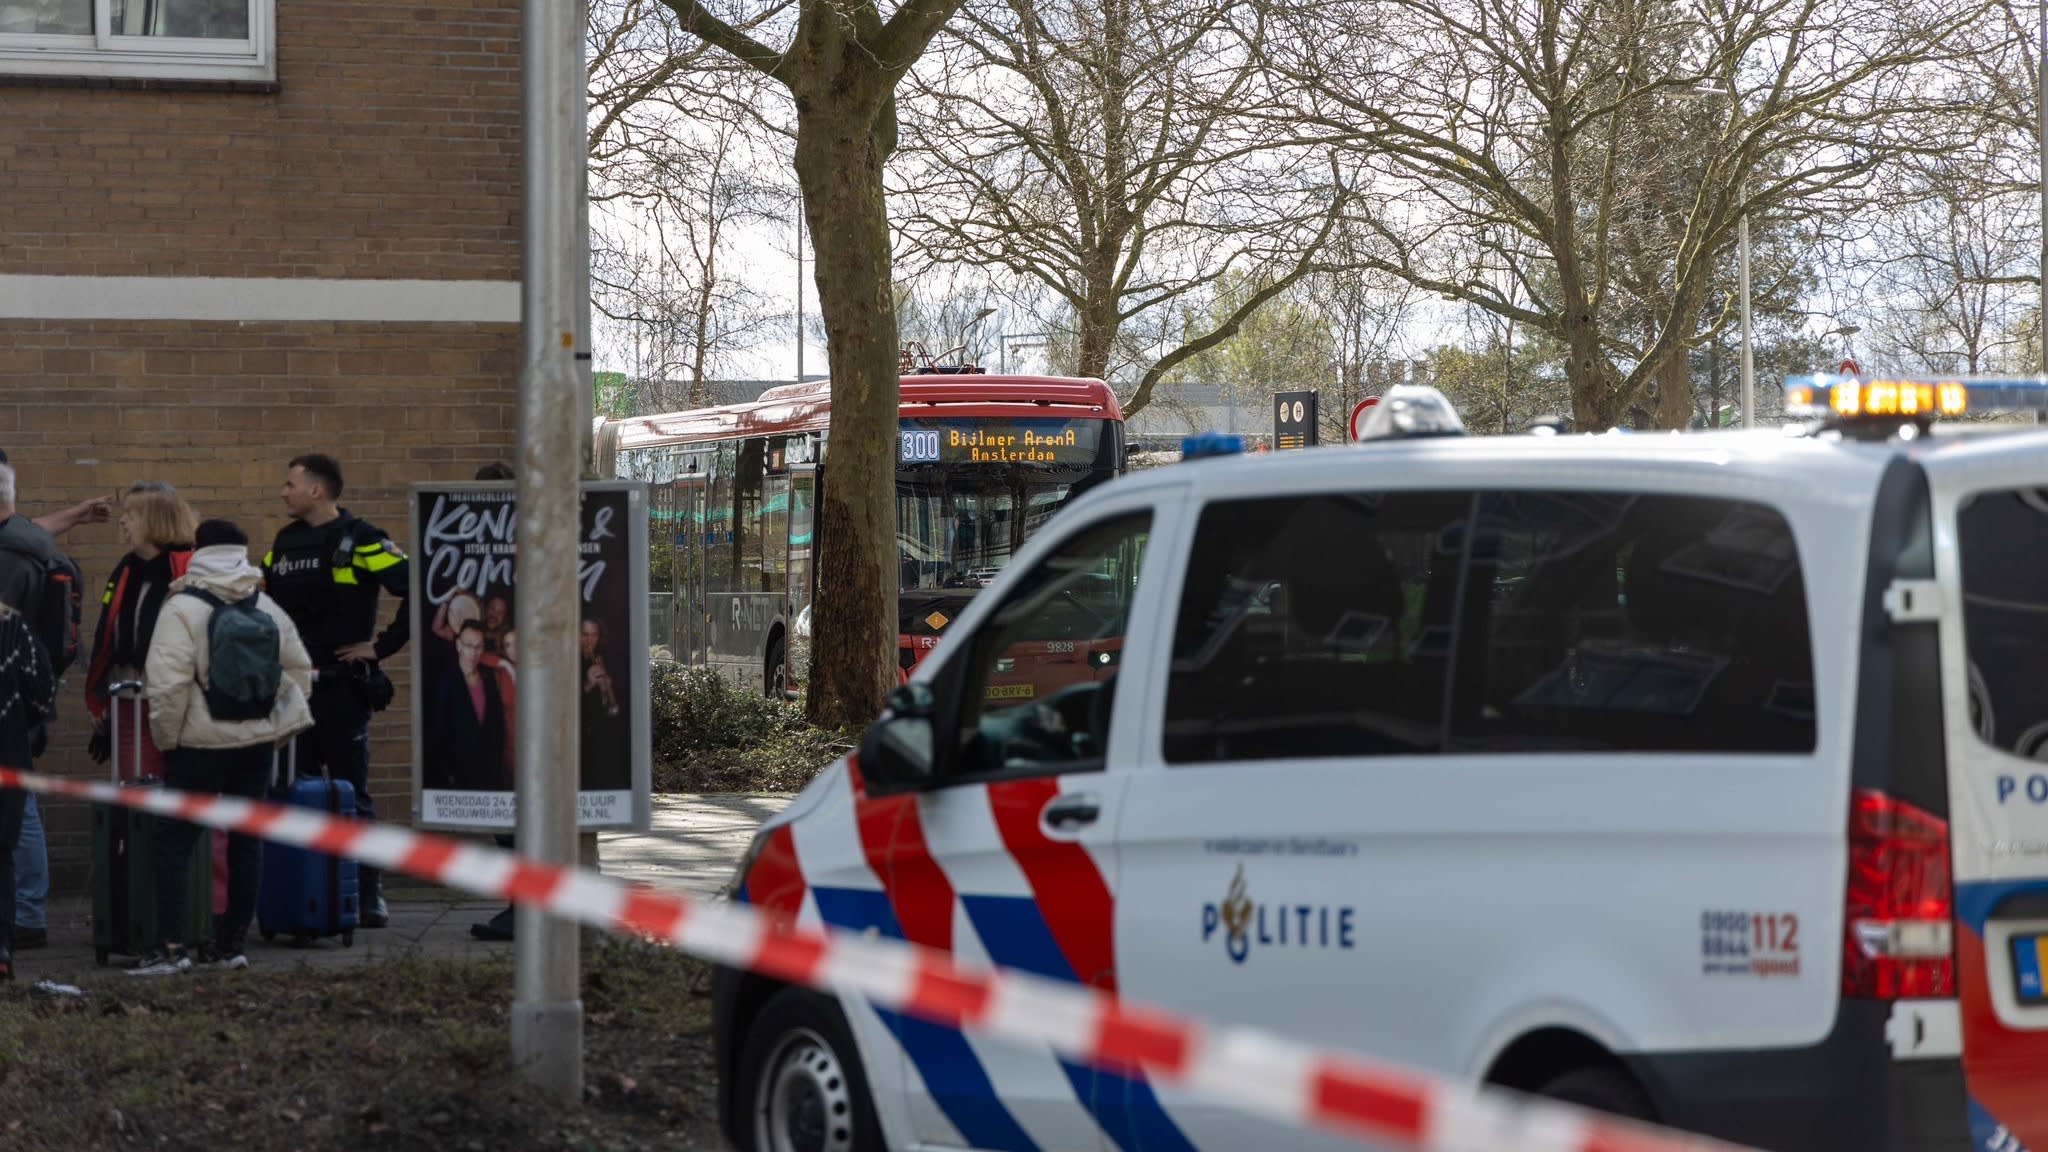 Politie arresteert man (67) met verdacht pakketje in Amstelveense bus